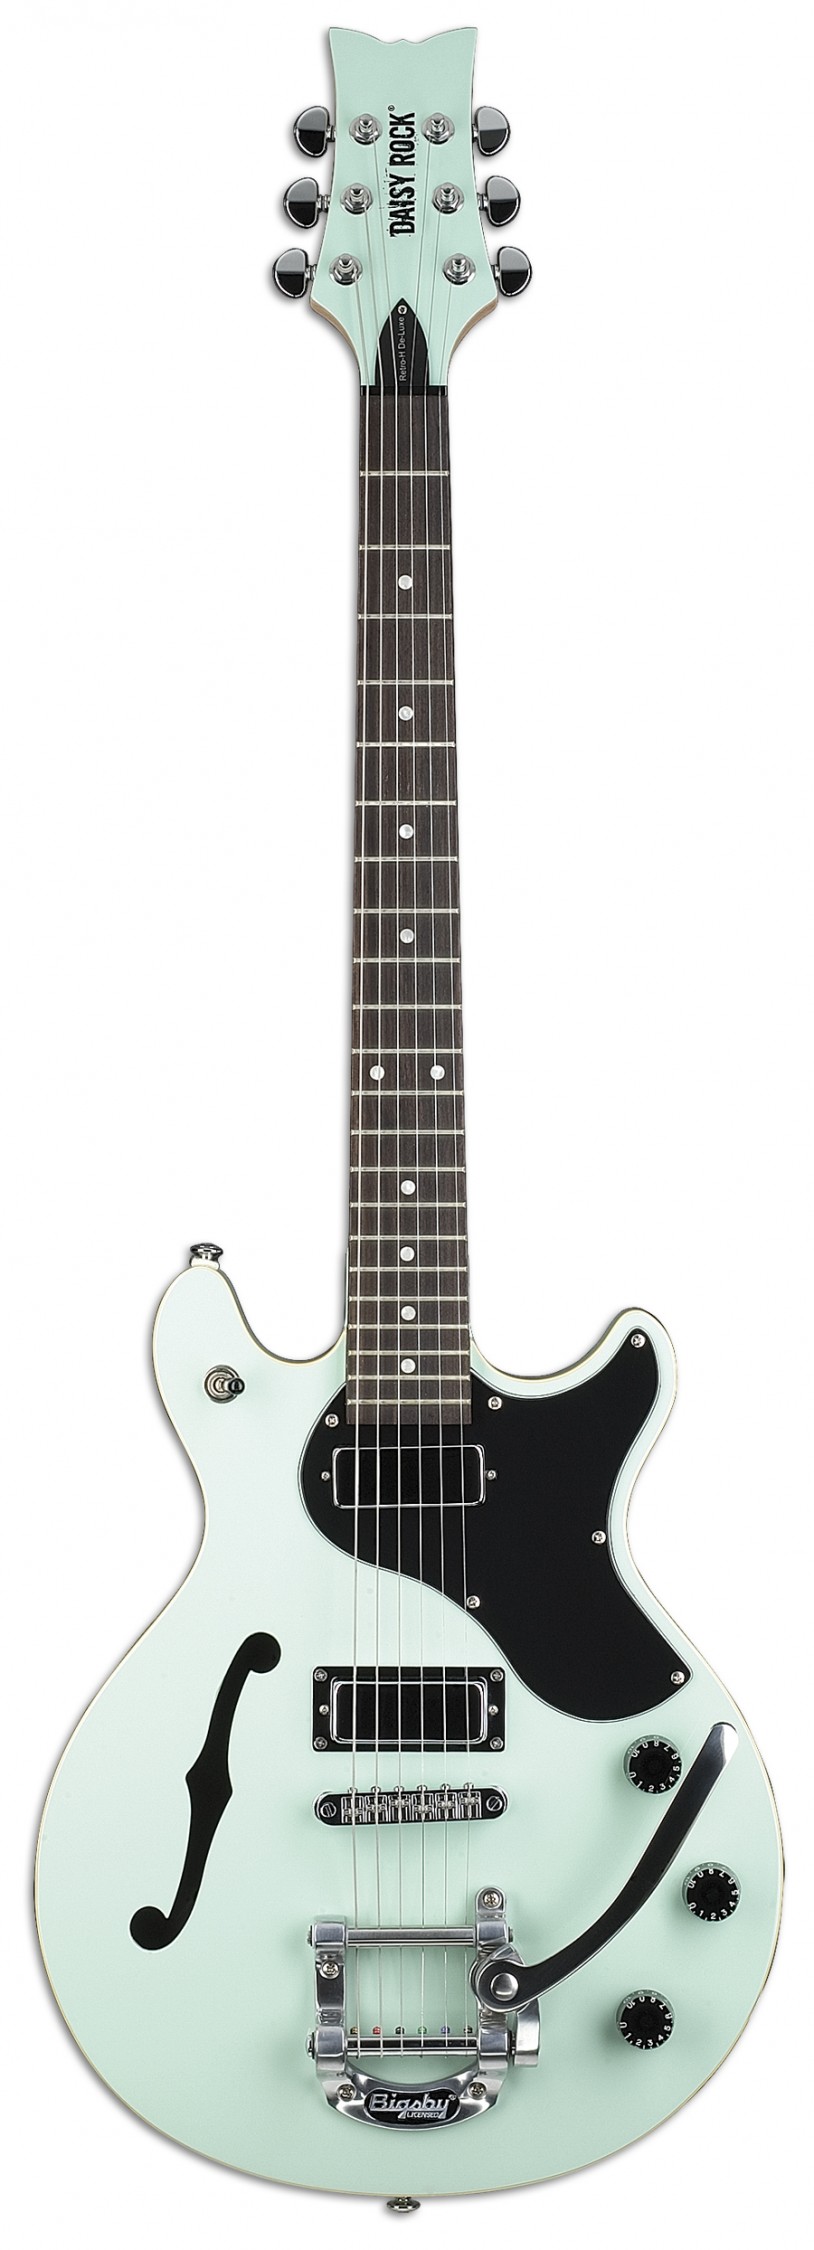 デイジー・ロック・ギターおよびベース15モデルを発売開始 | News